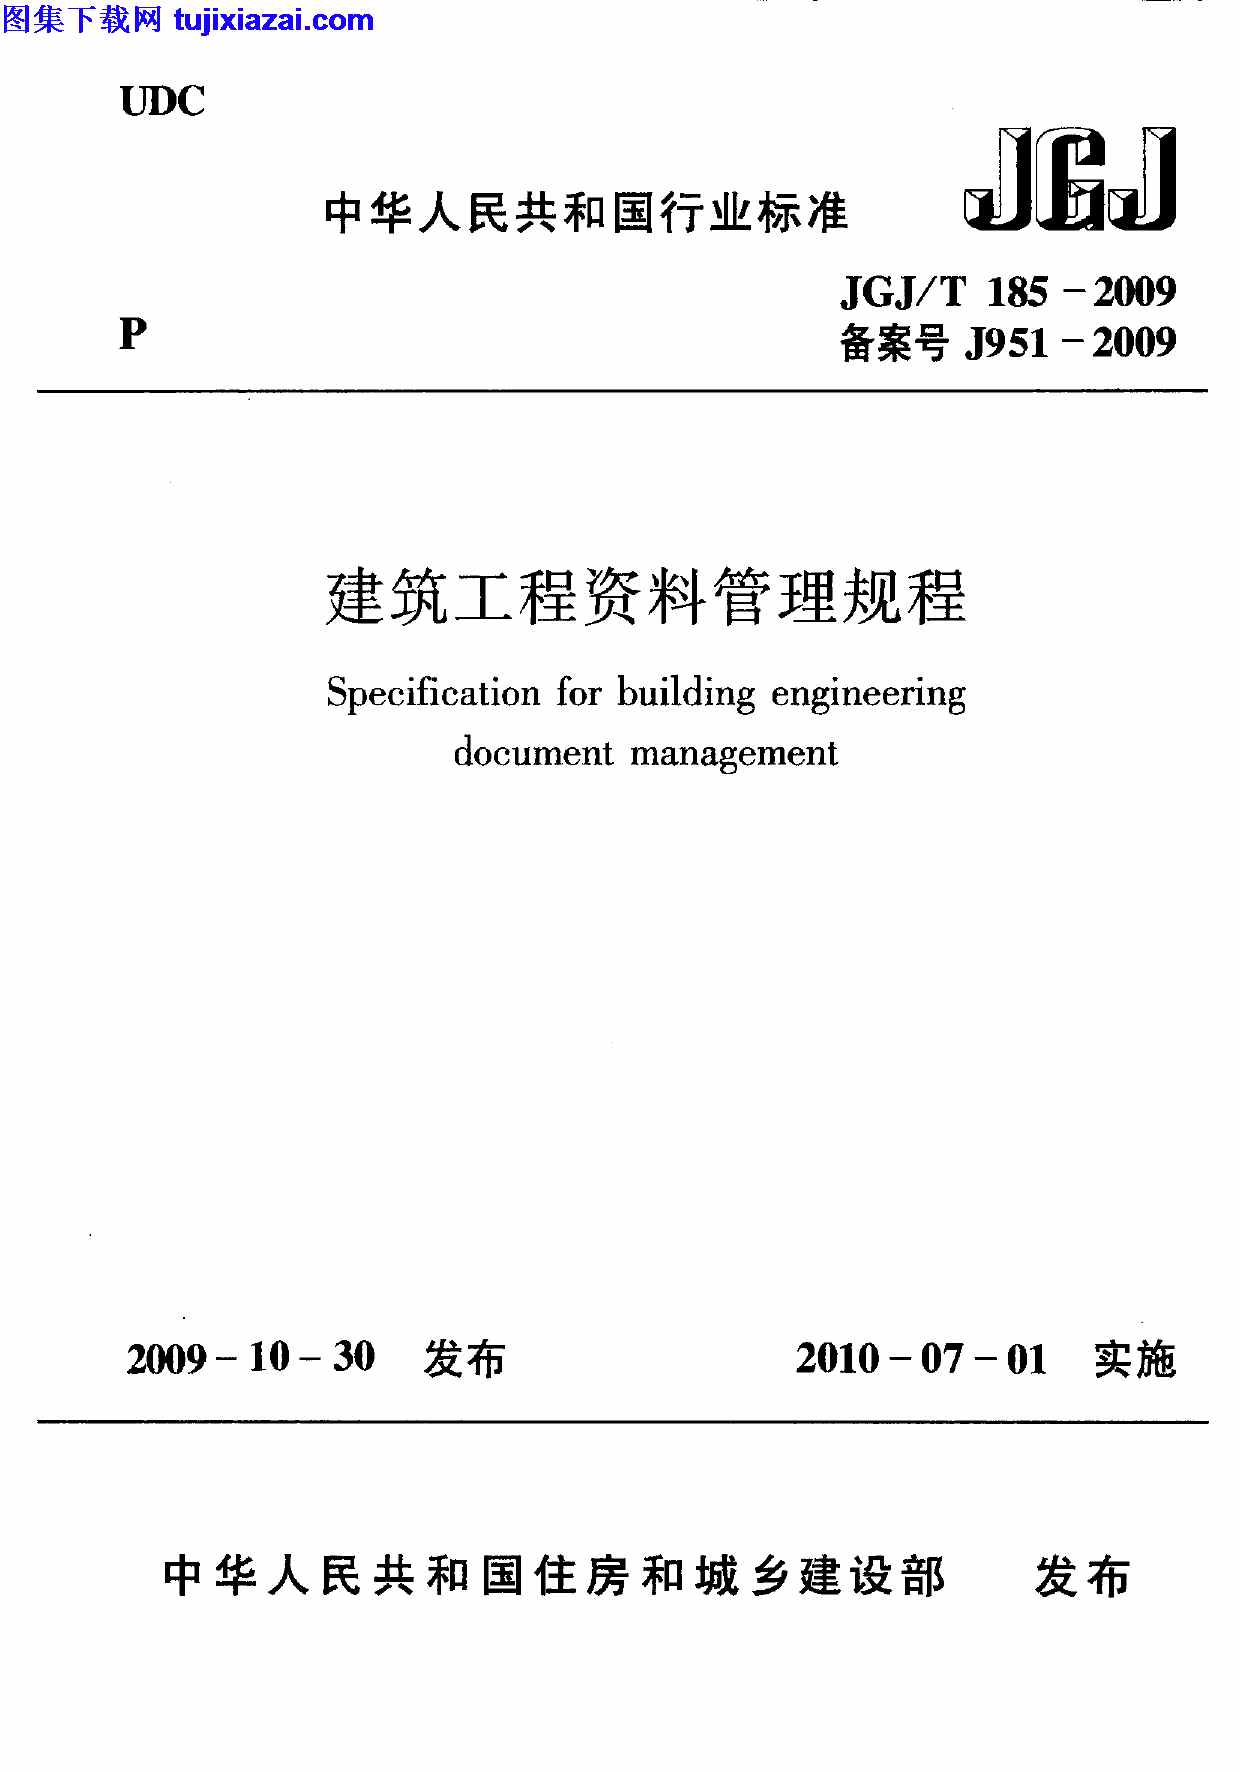 JGJT185-2009,建筑工程资料管理规程,建筑工程资料管理规程_施工规范,施工规范,JGJT185-2009_建筑工程资料管理规程_施工规范.pdf